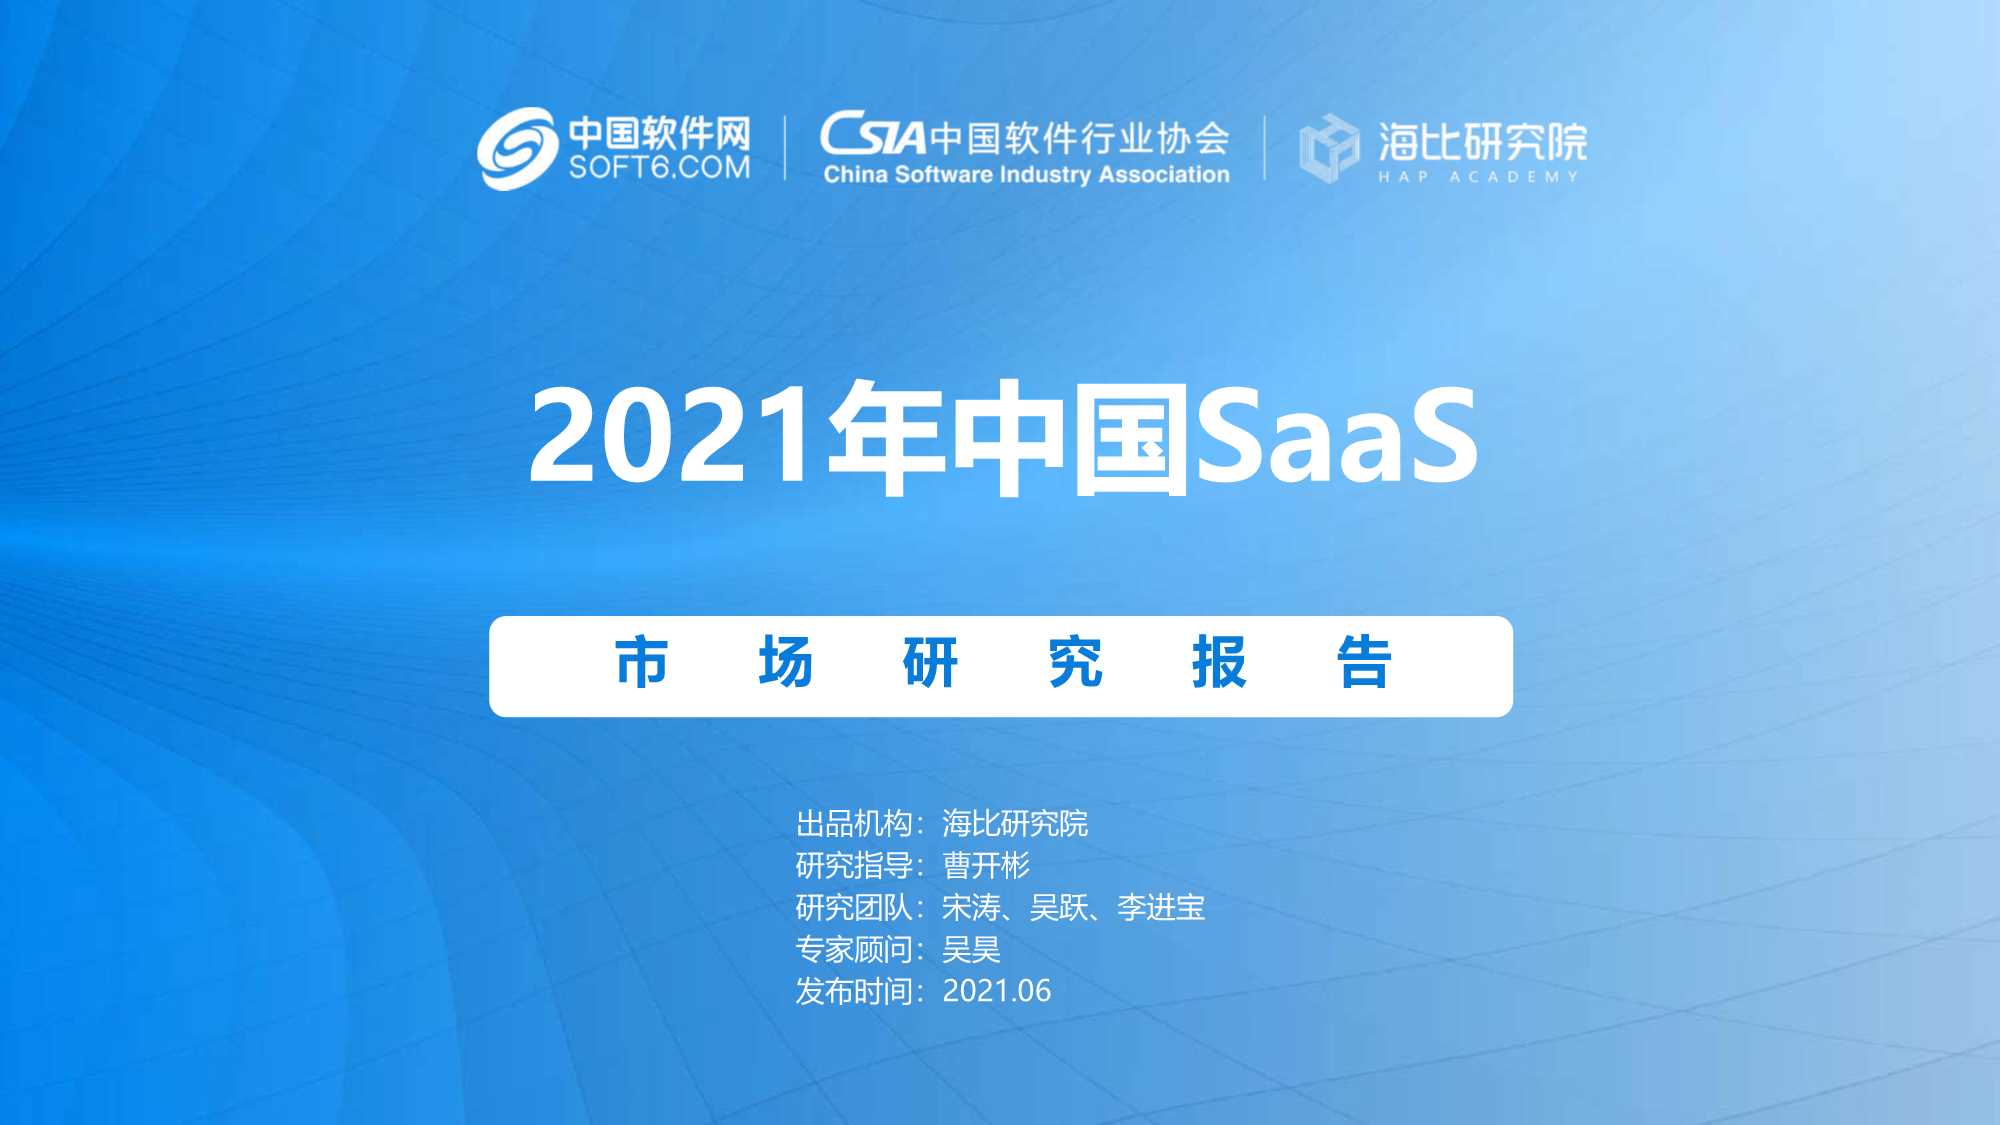 海比研究院-2021年中国SaaS市场研究报告-2021.06-102页